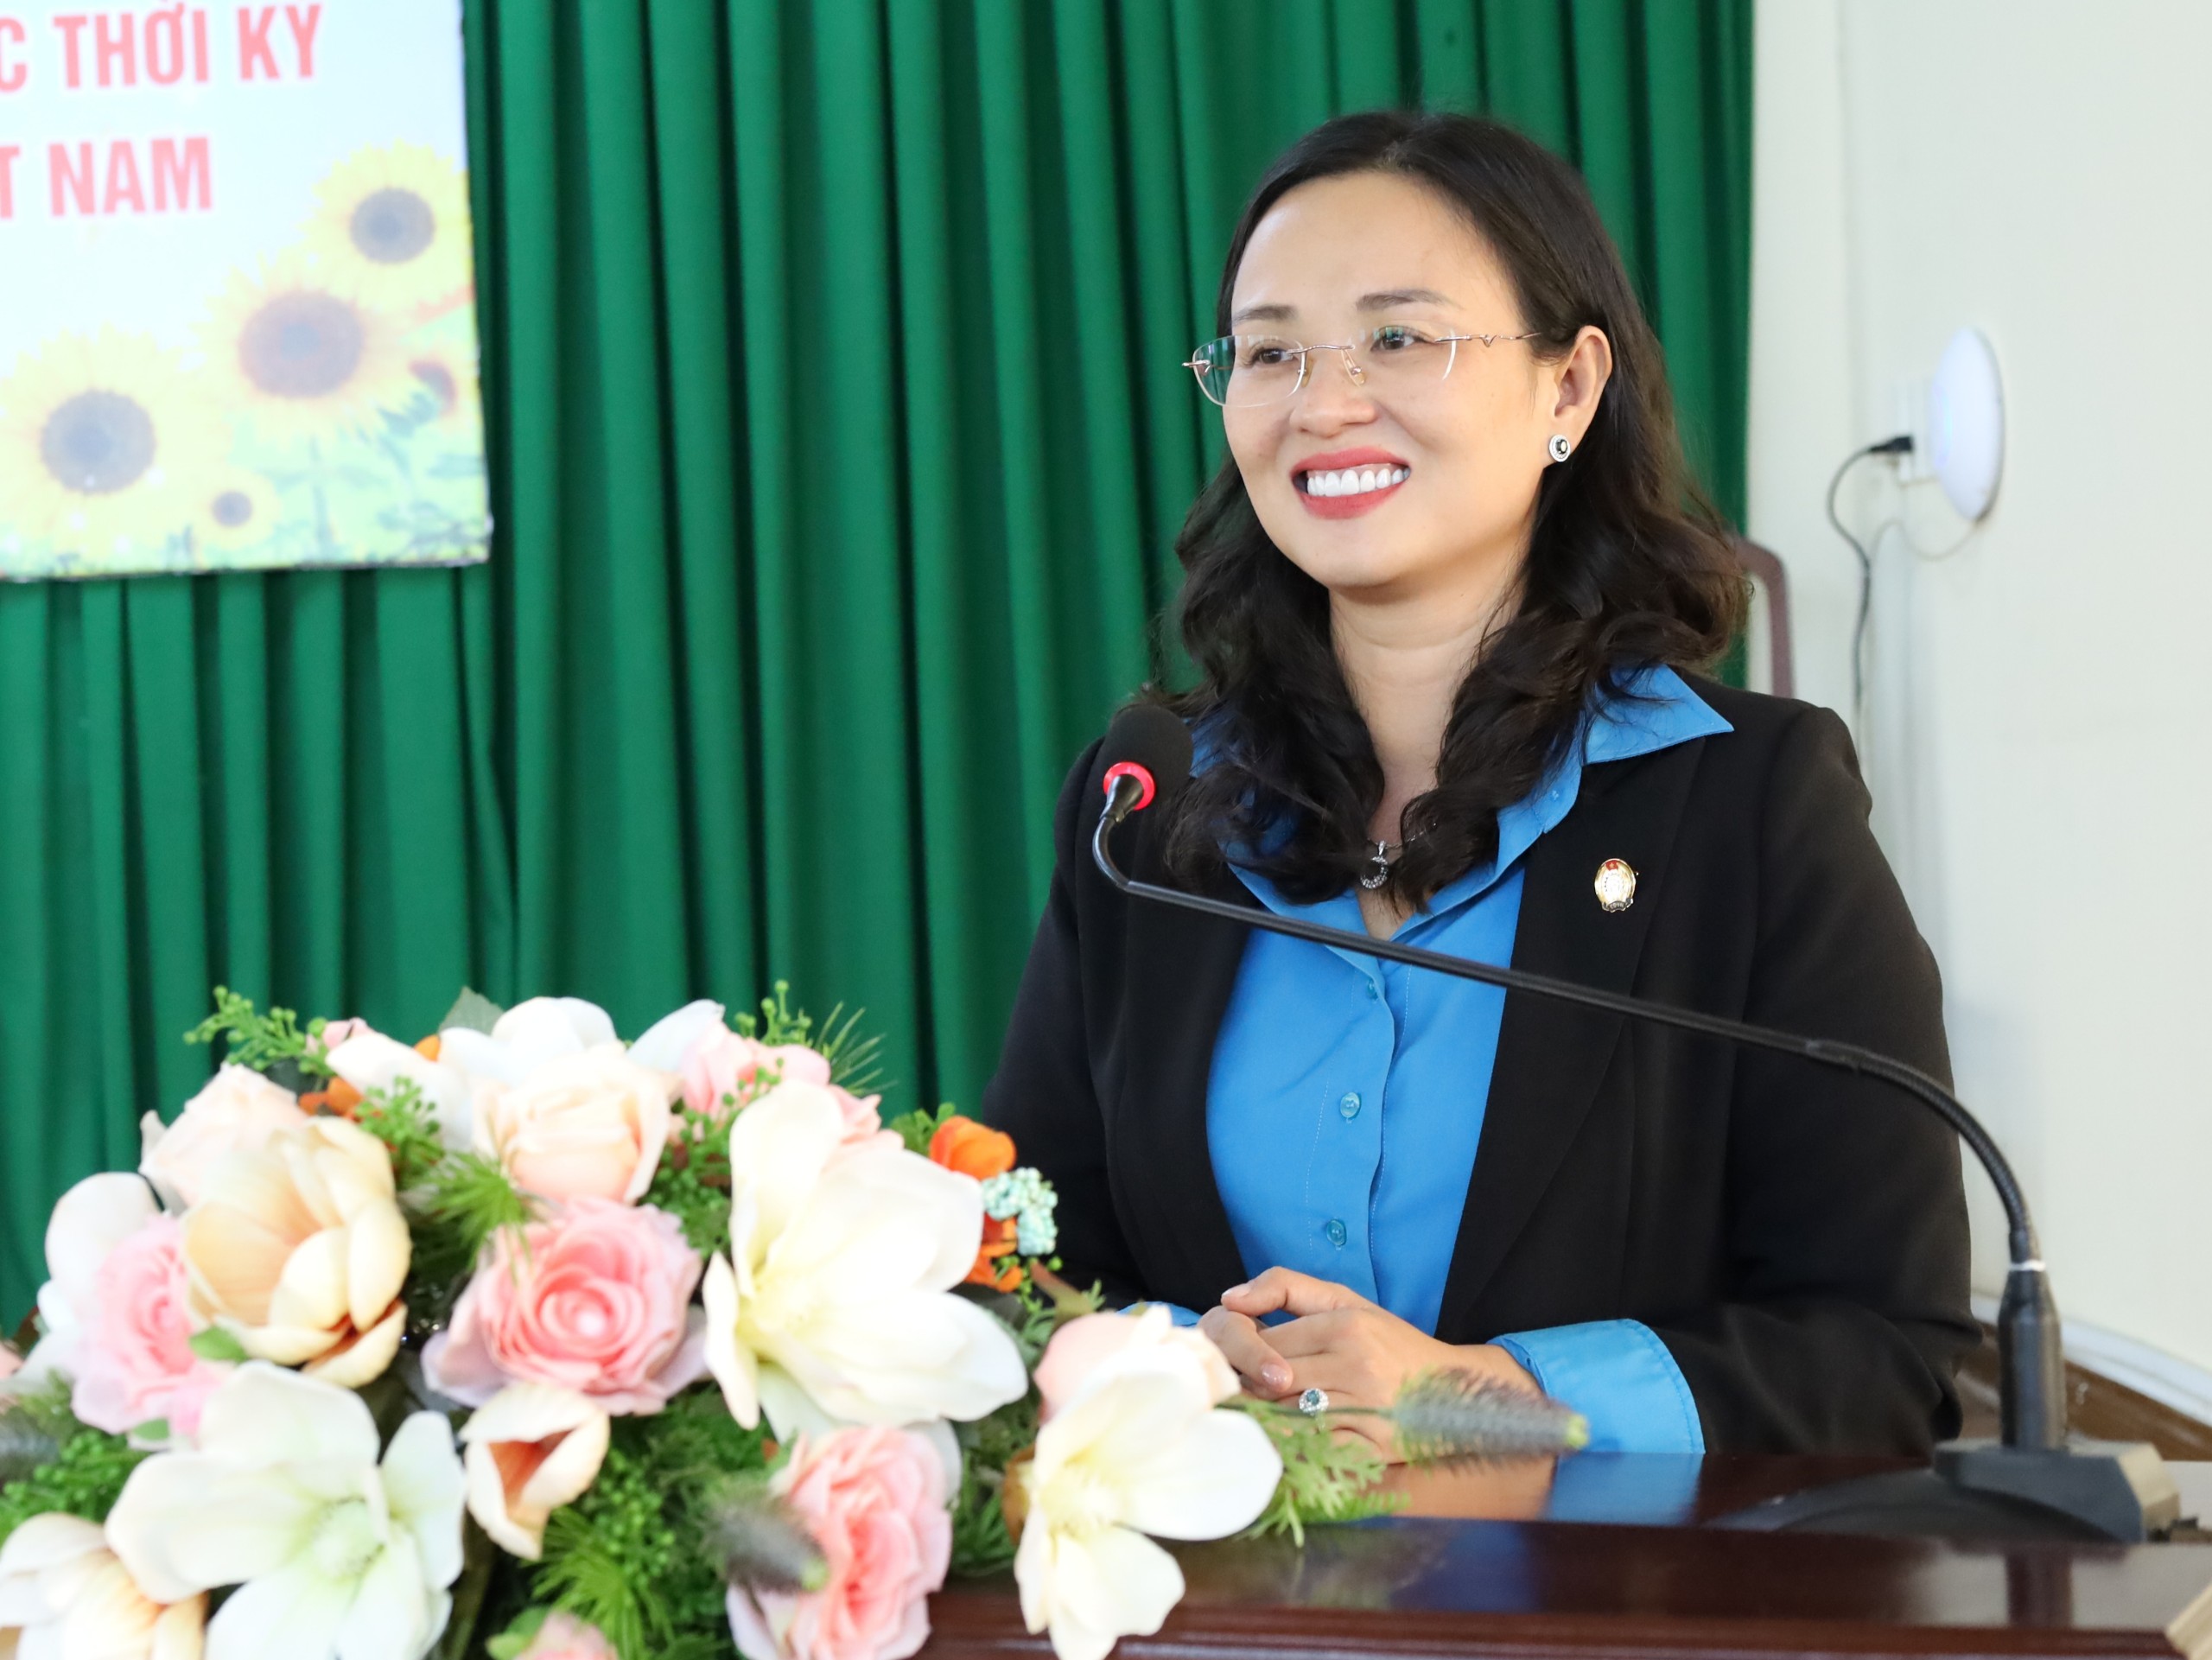 Bà Lê Thị Sương Mai - Chủ tịch Liên đoàn lao động TP. Cần Thơ phát biểu tại buổi họp mặt.